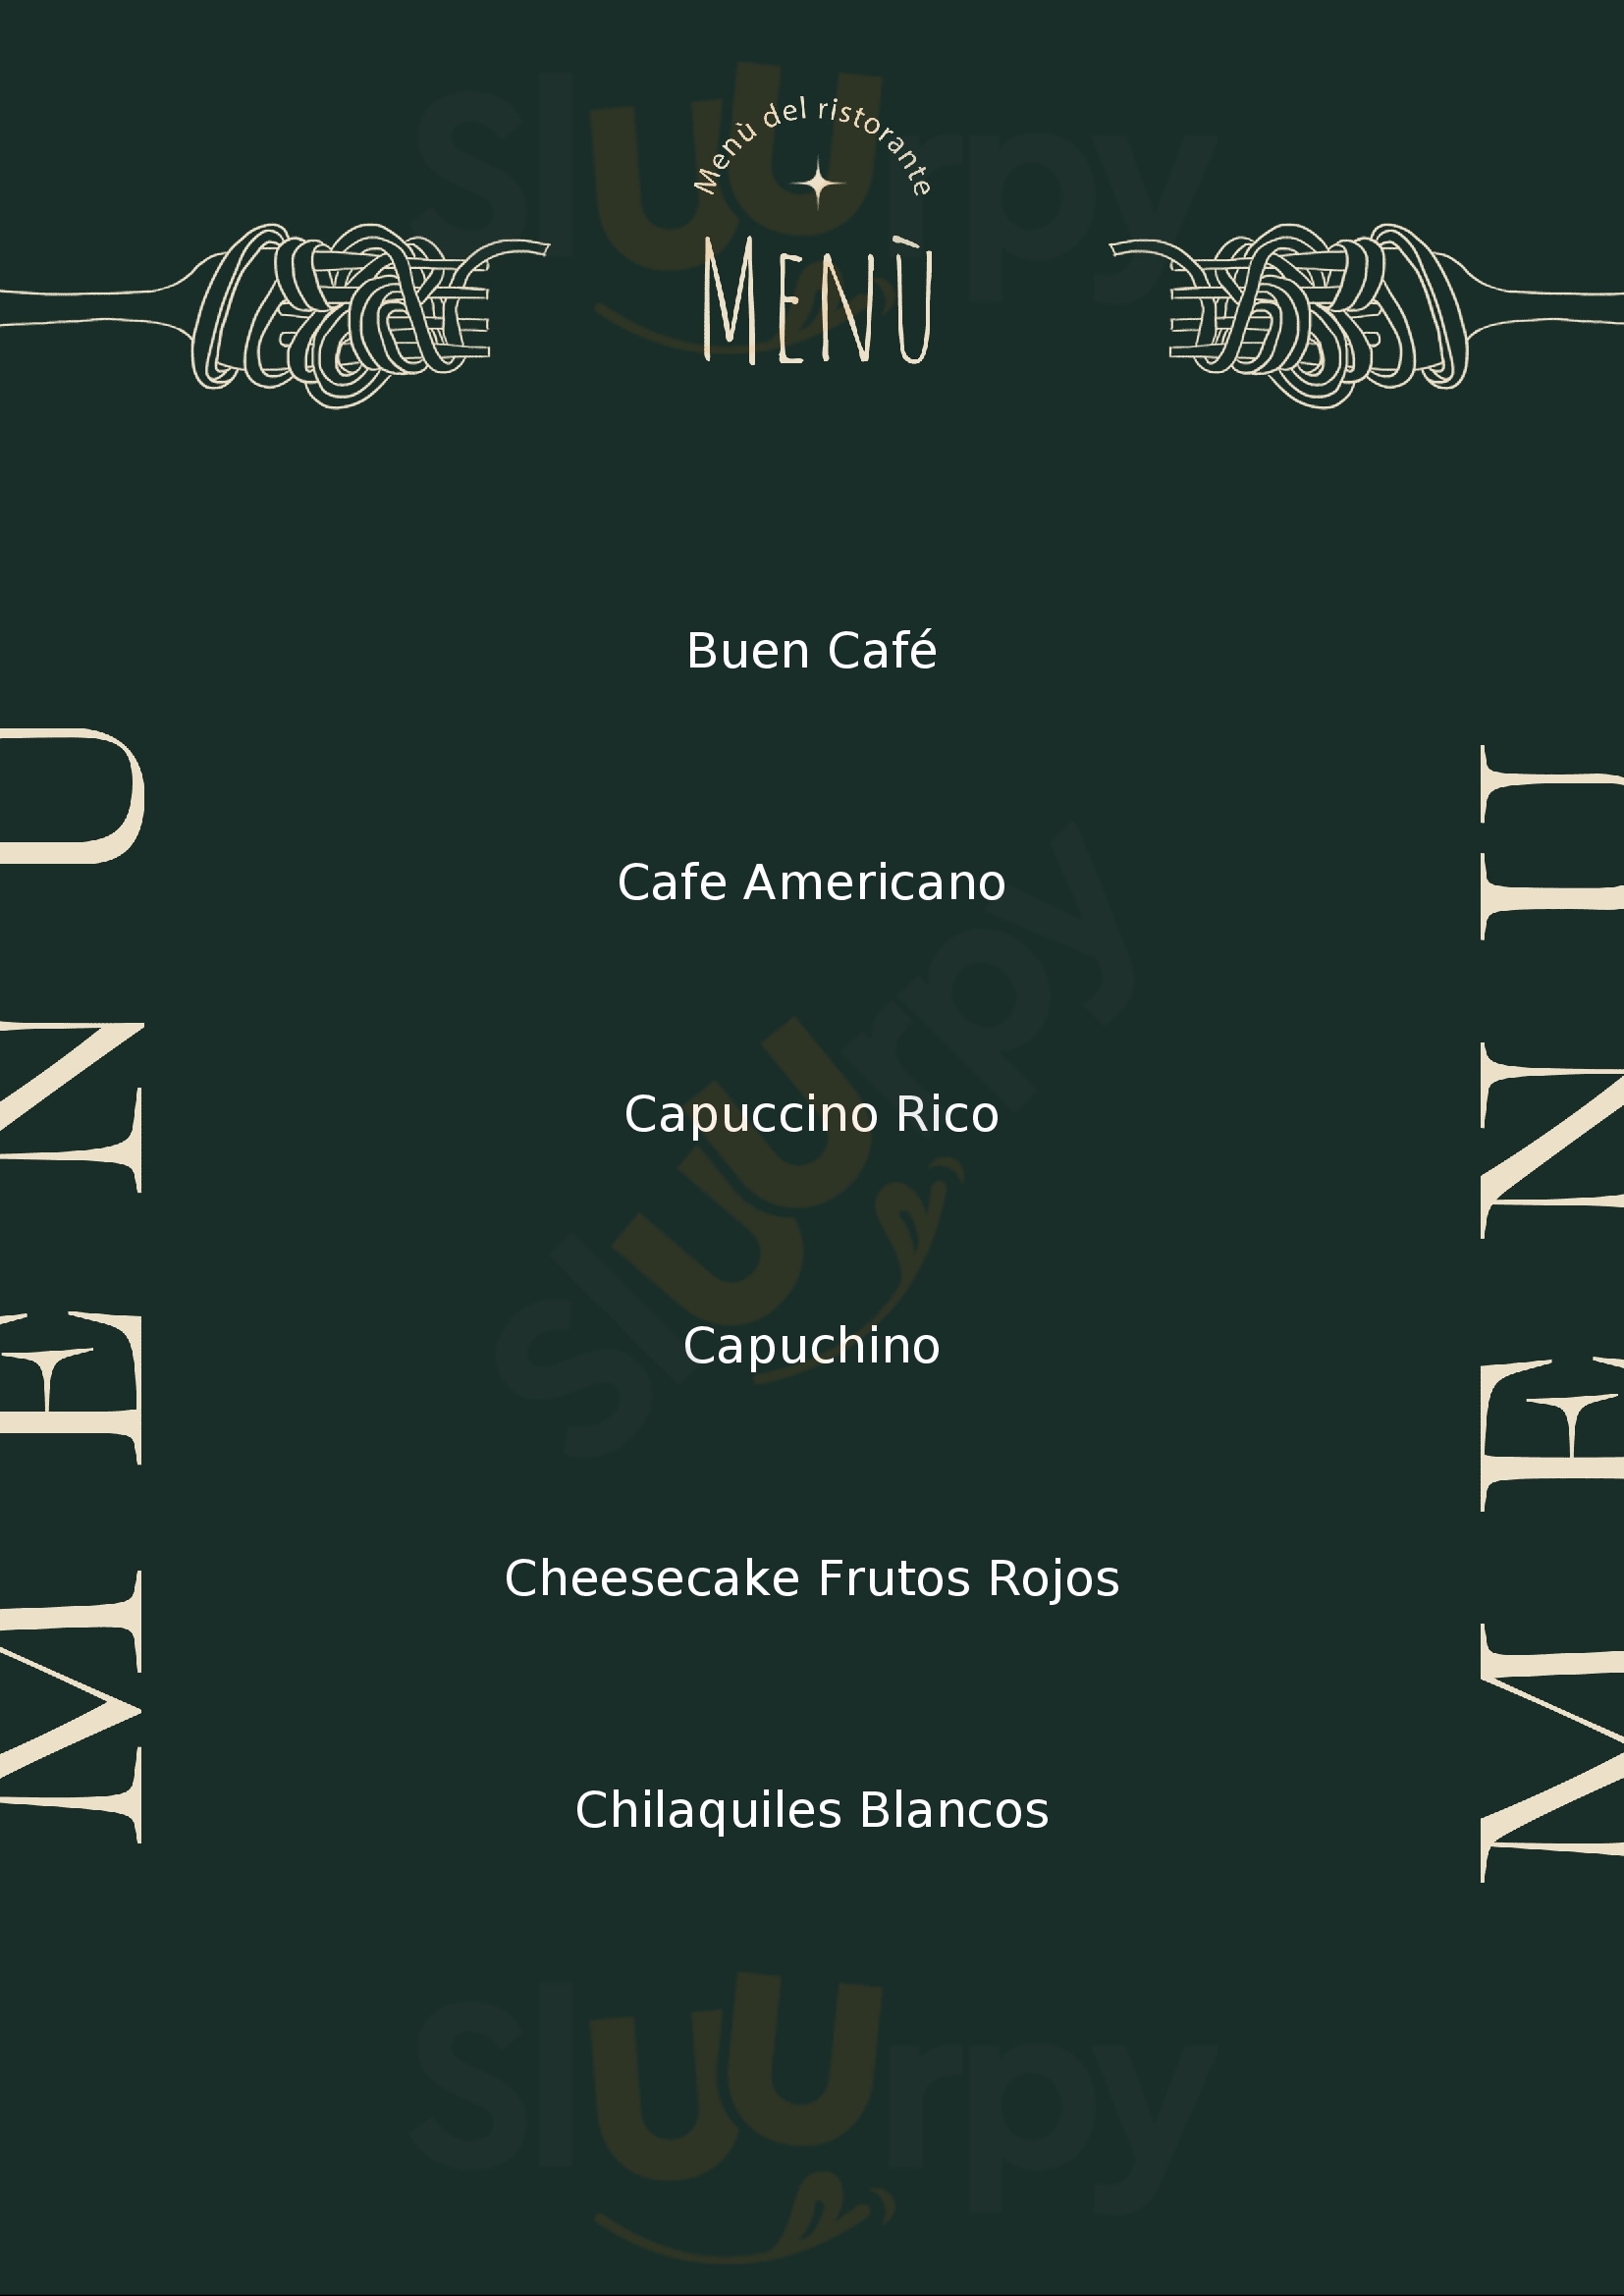 Nectar Cafe & Restaurante Chihuahua Menu - 1